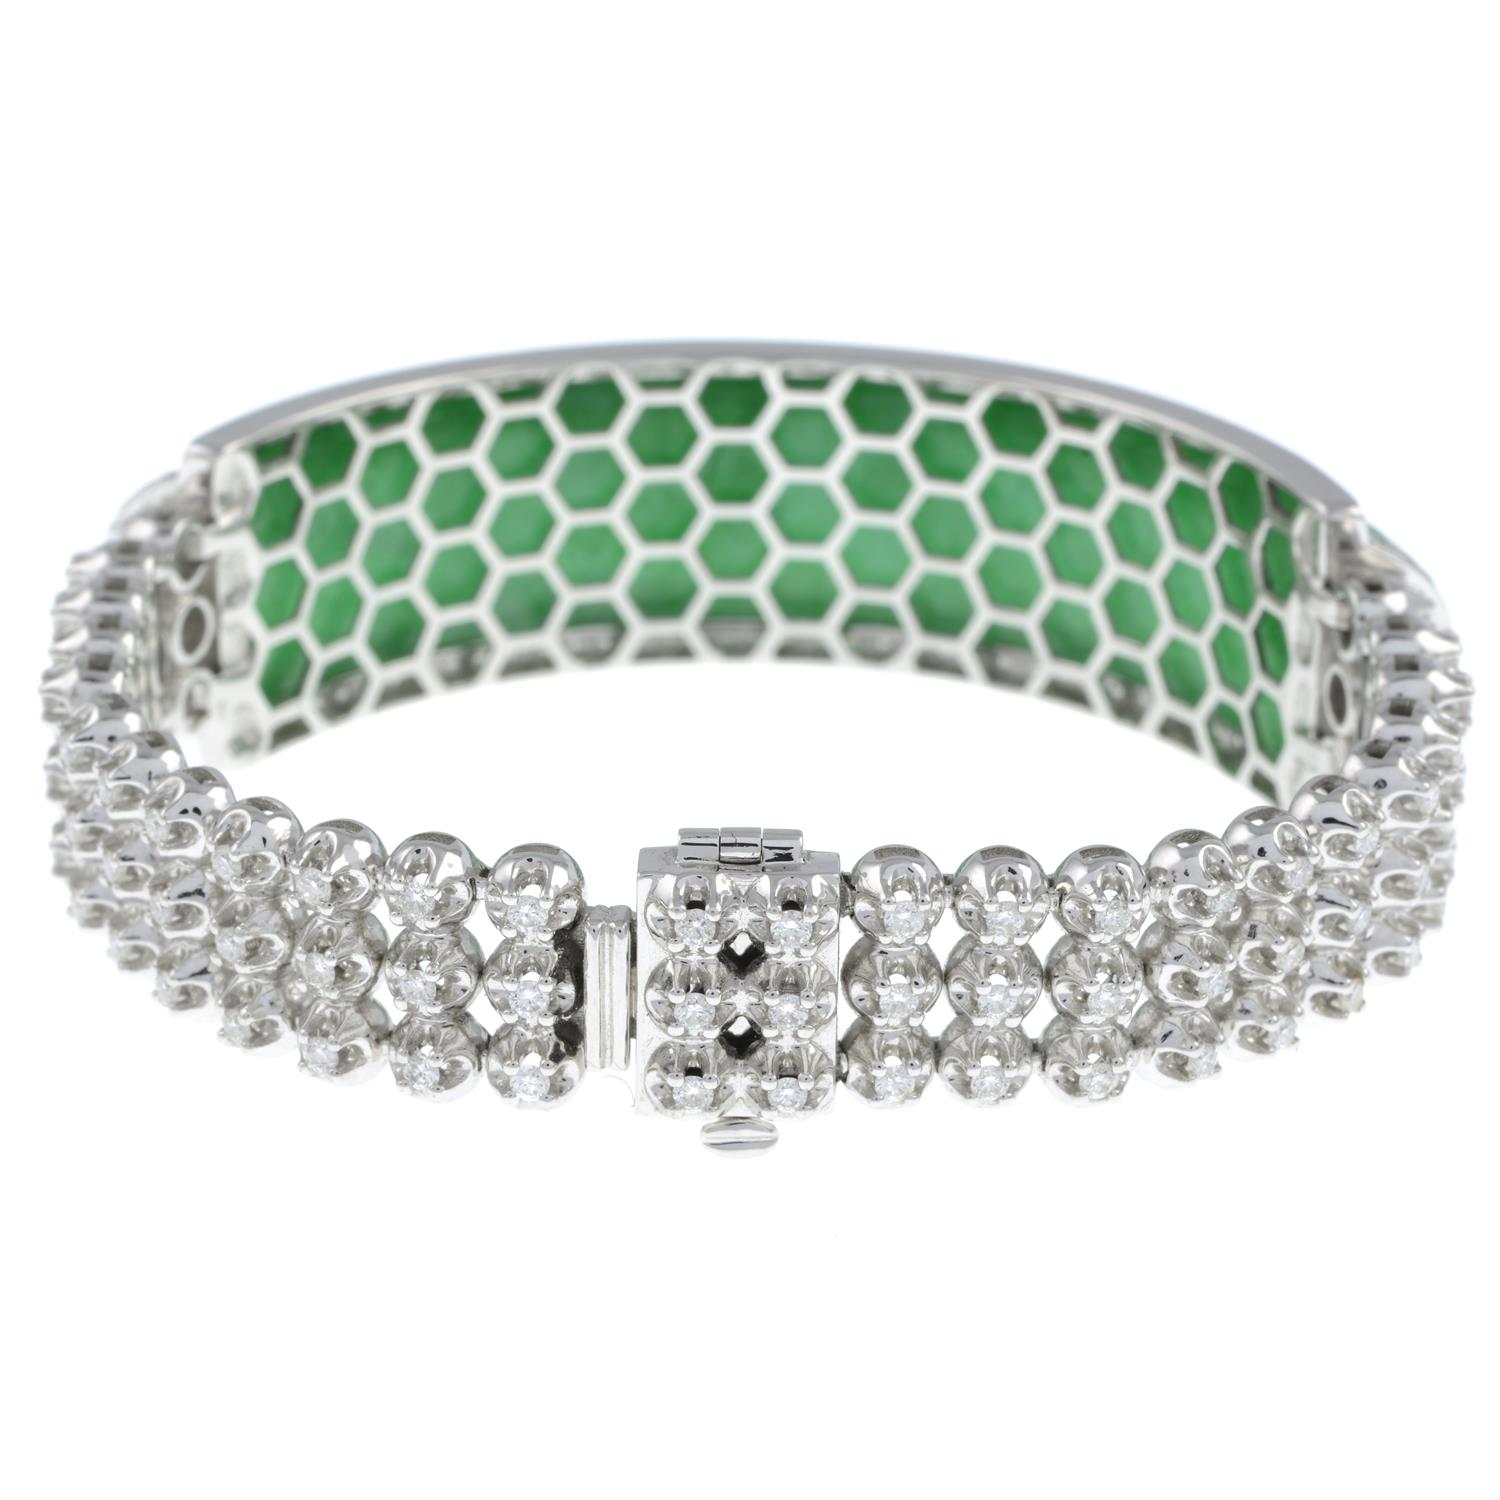 Jade and diamond bracelet, by Jadeite & Co. - Image 3 of 4